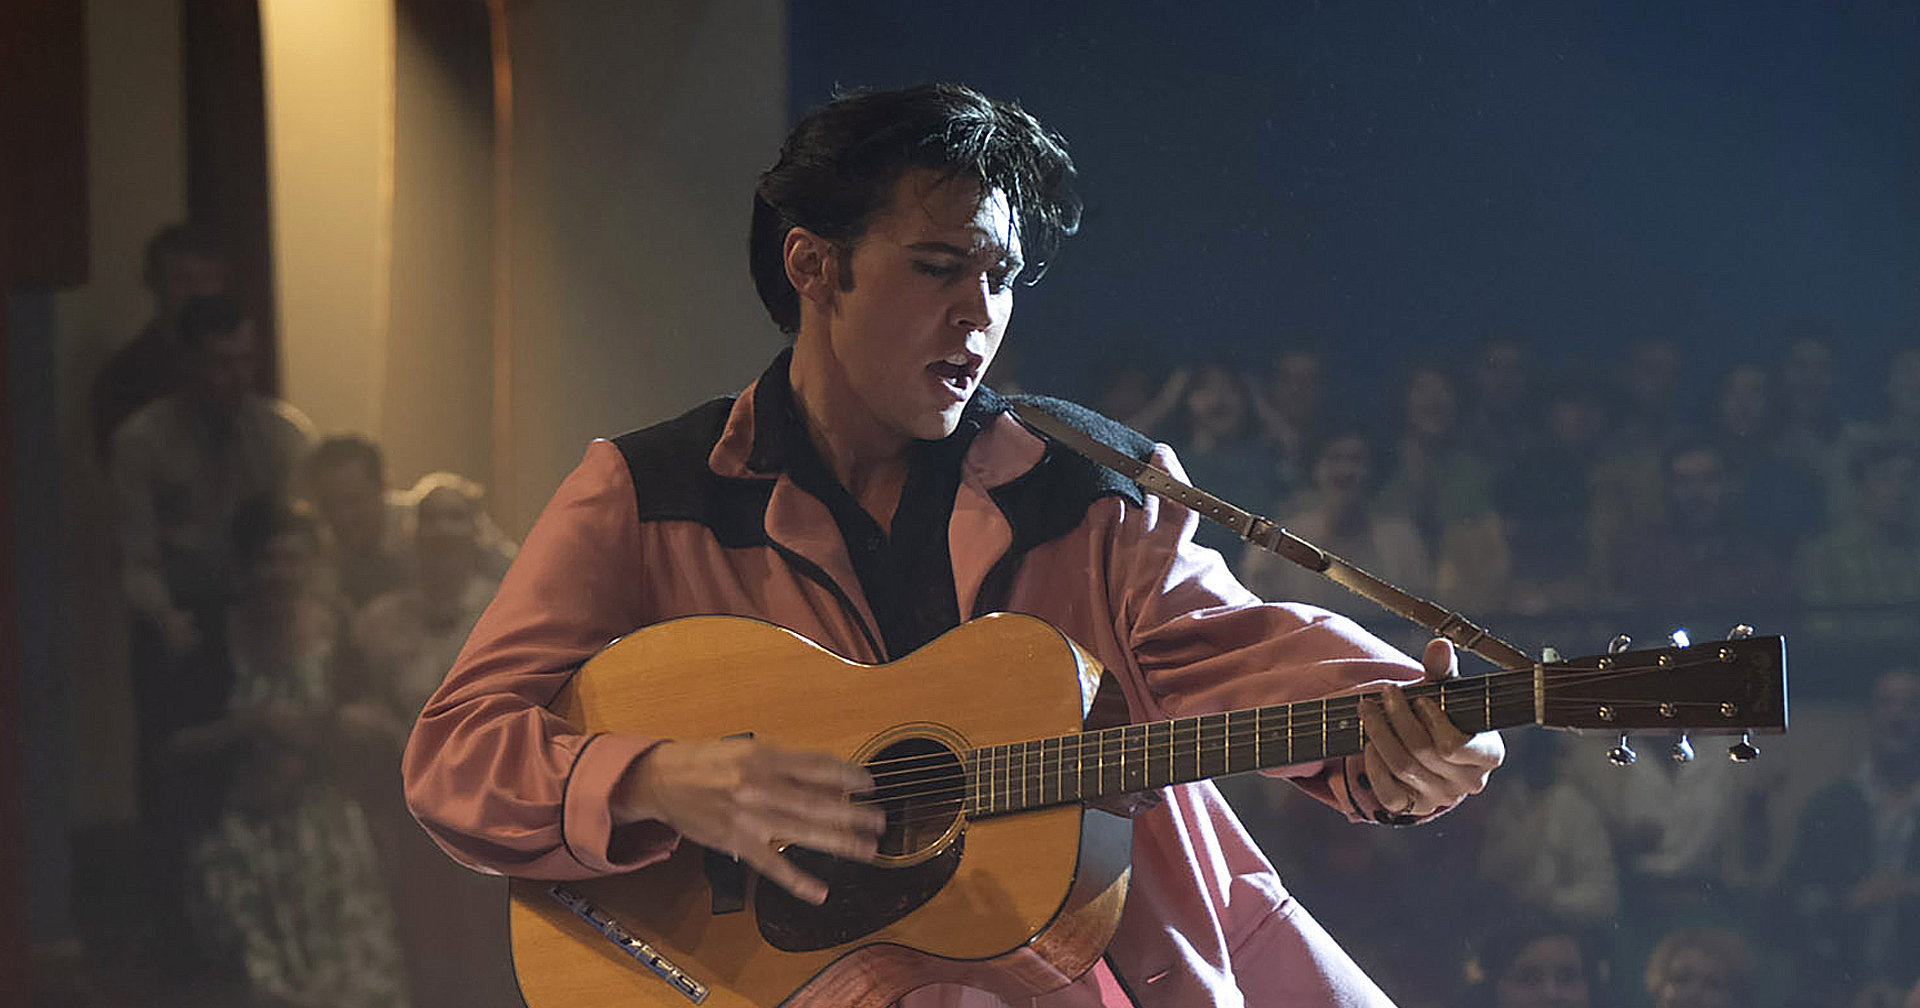 ออสติน บัตเลอร์ ร้องเพลง That’s All Right ได้อย่างยอดเยี่ยม ในเบื้องหลังการถ่ายทำ ‘Elvis’